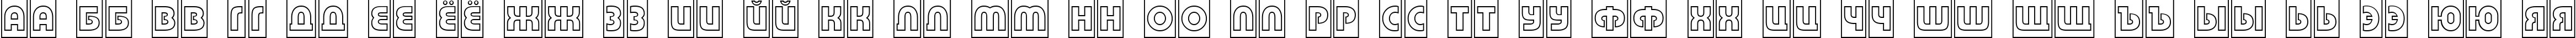 Пример написания русского алфавита шрифтом a_BighausTitulCmOtl